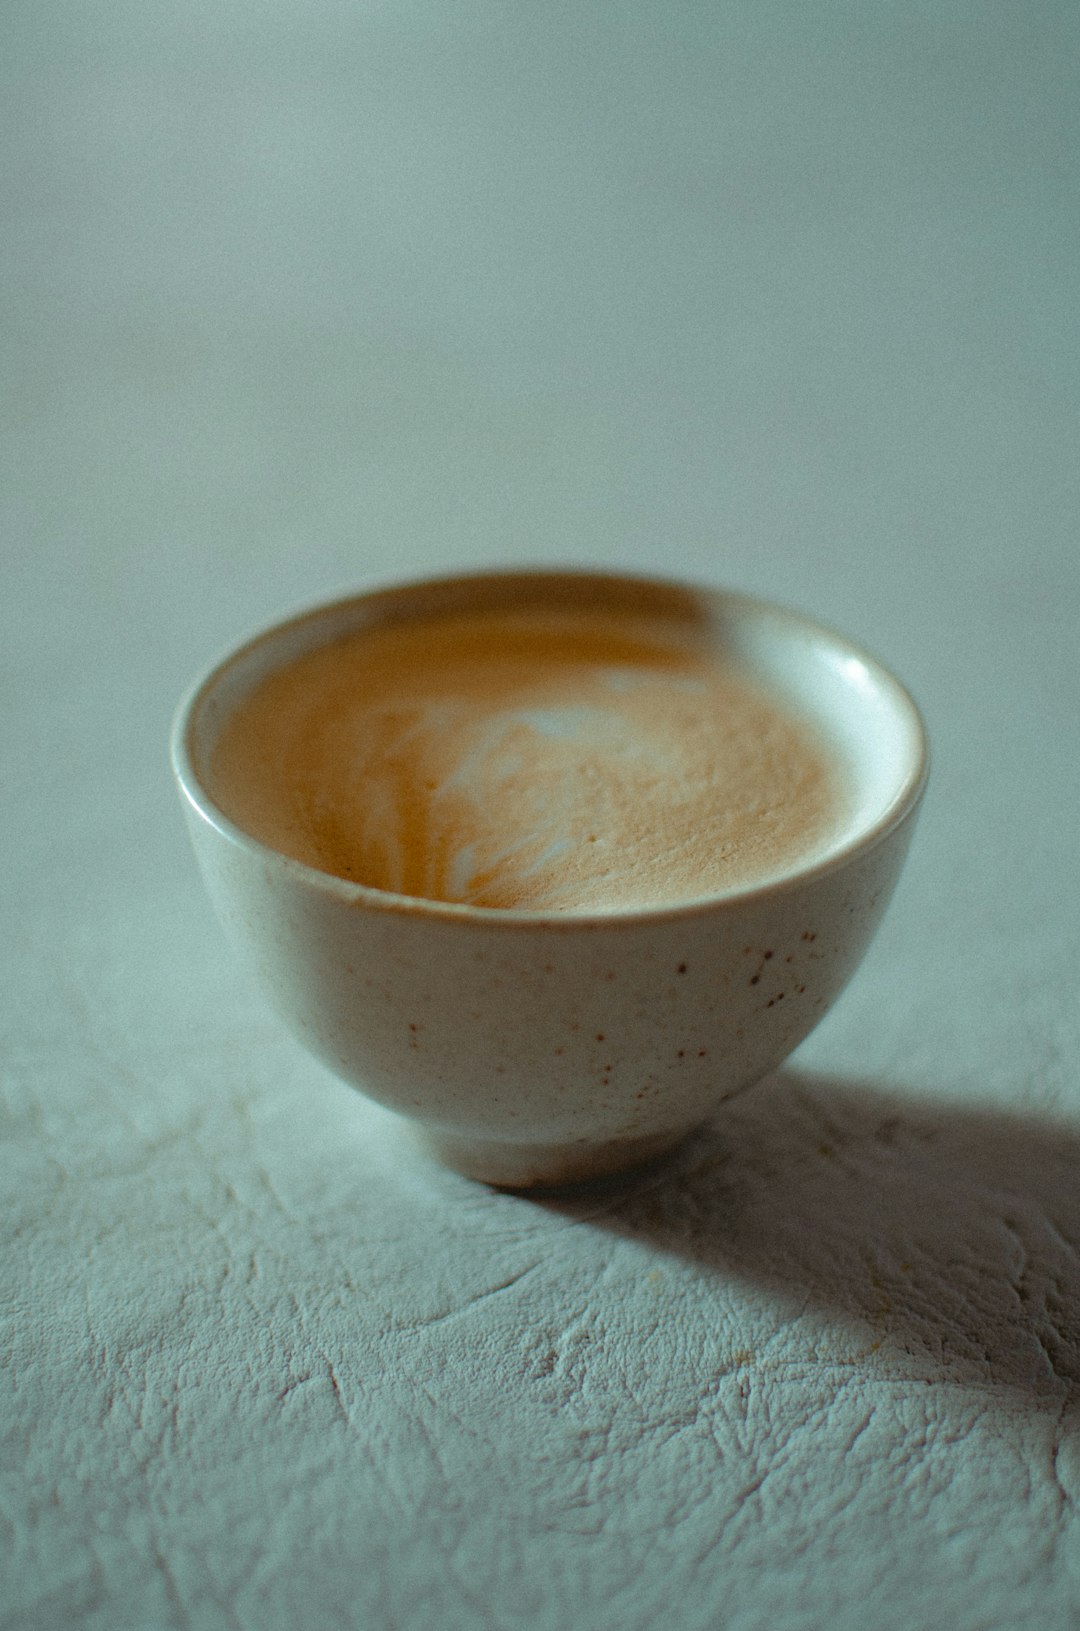 white ceramic bowl on white textile